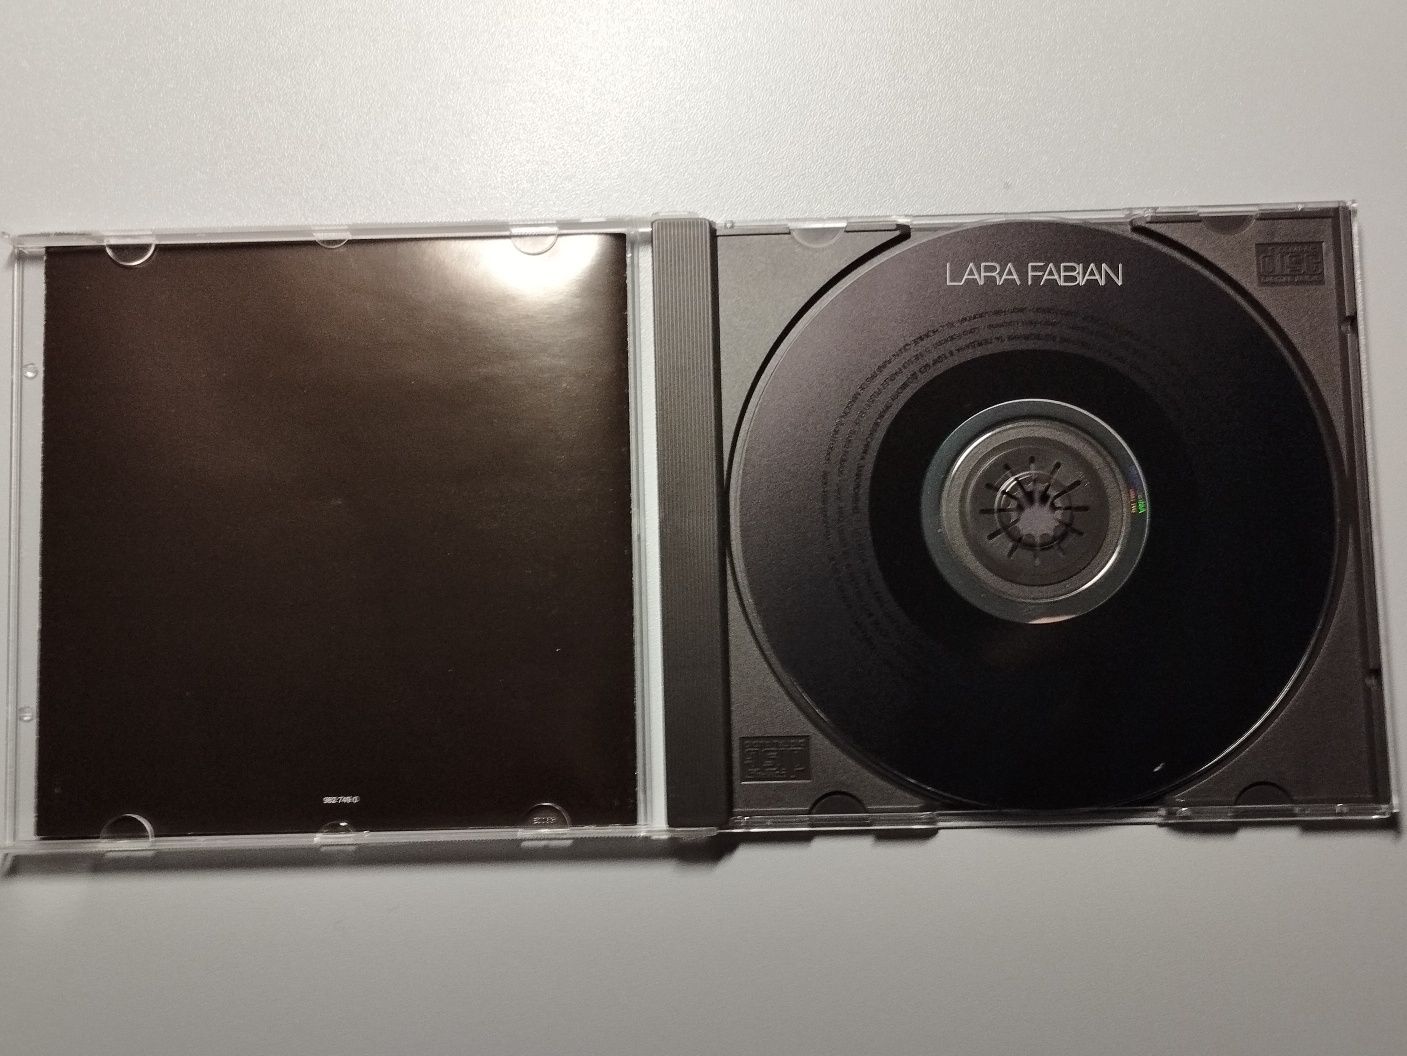 Lara Fabian "9" 2005г. на французском языке лицензионный CD